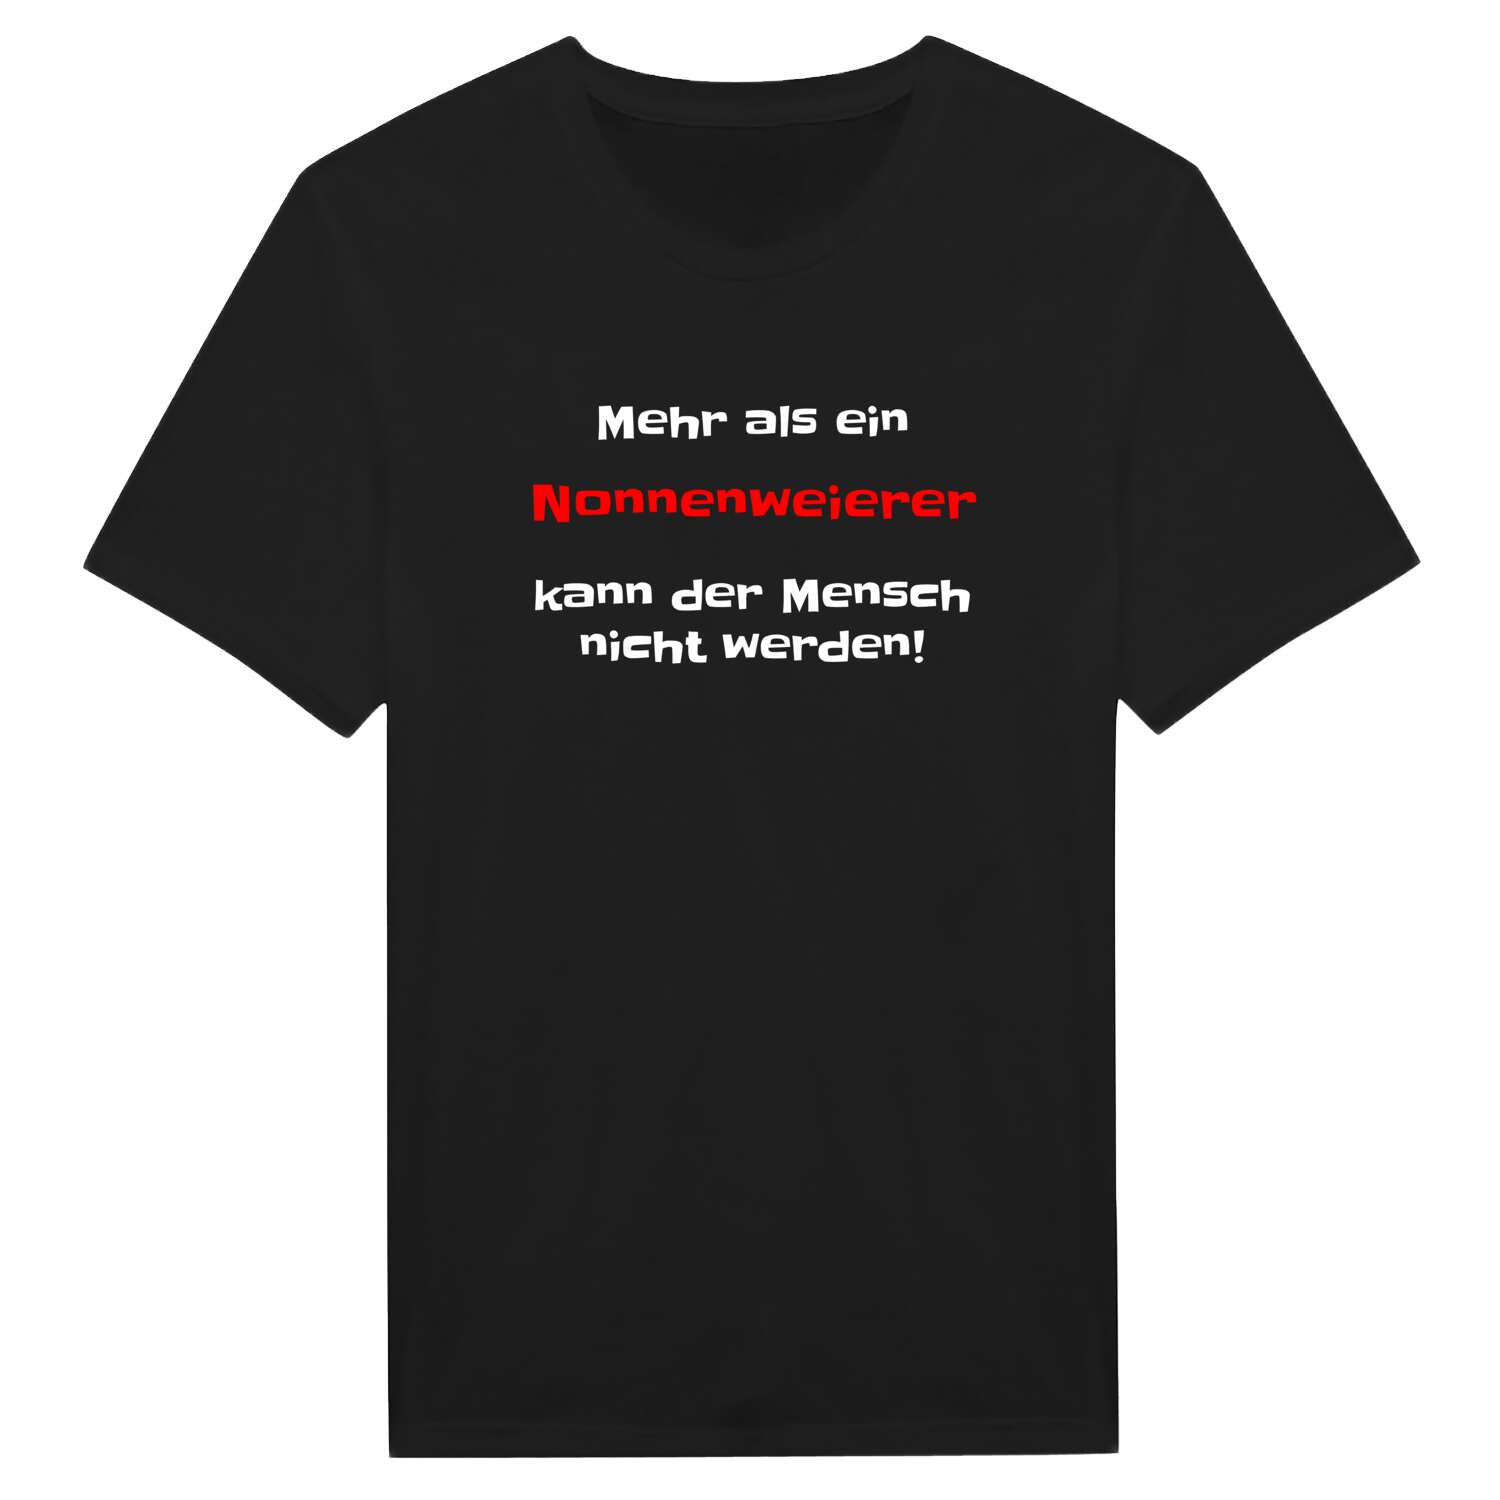 Nonnenweier T-Shirt »Mehr als ein«